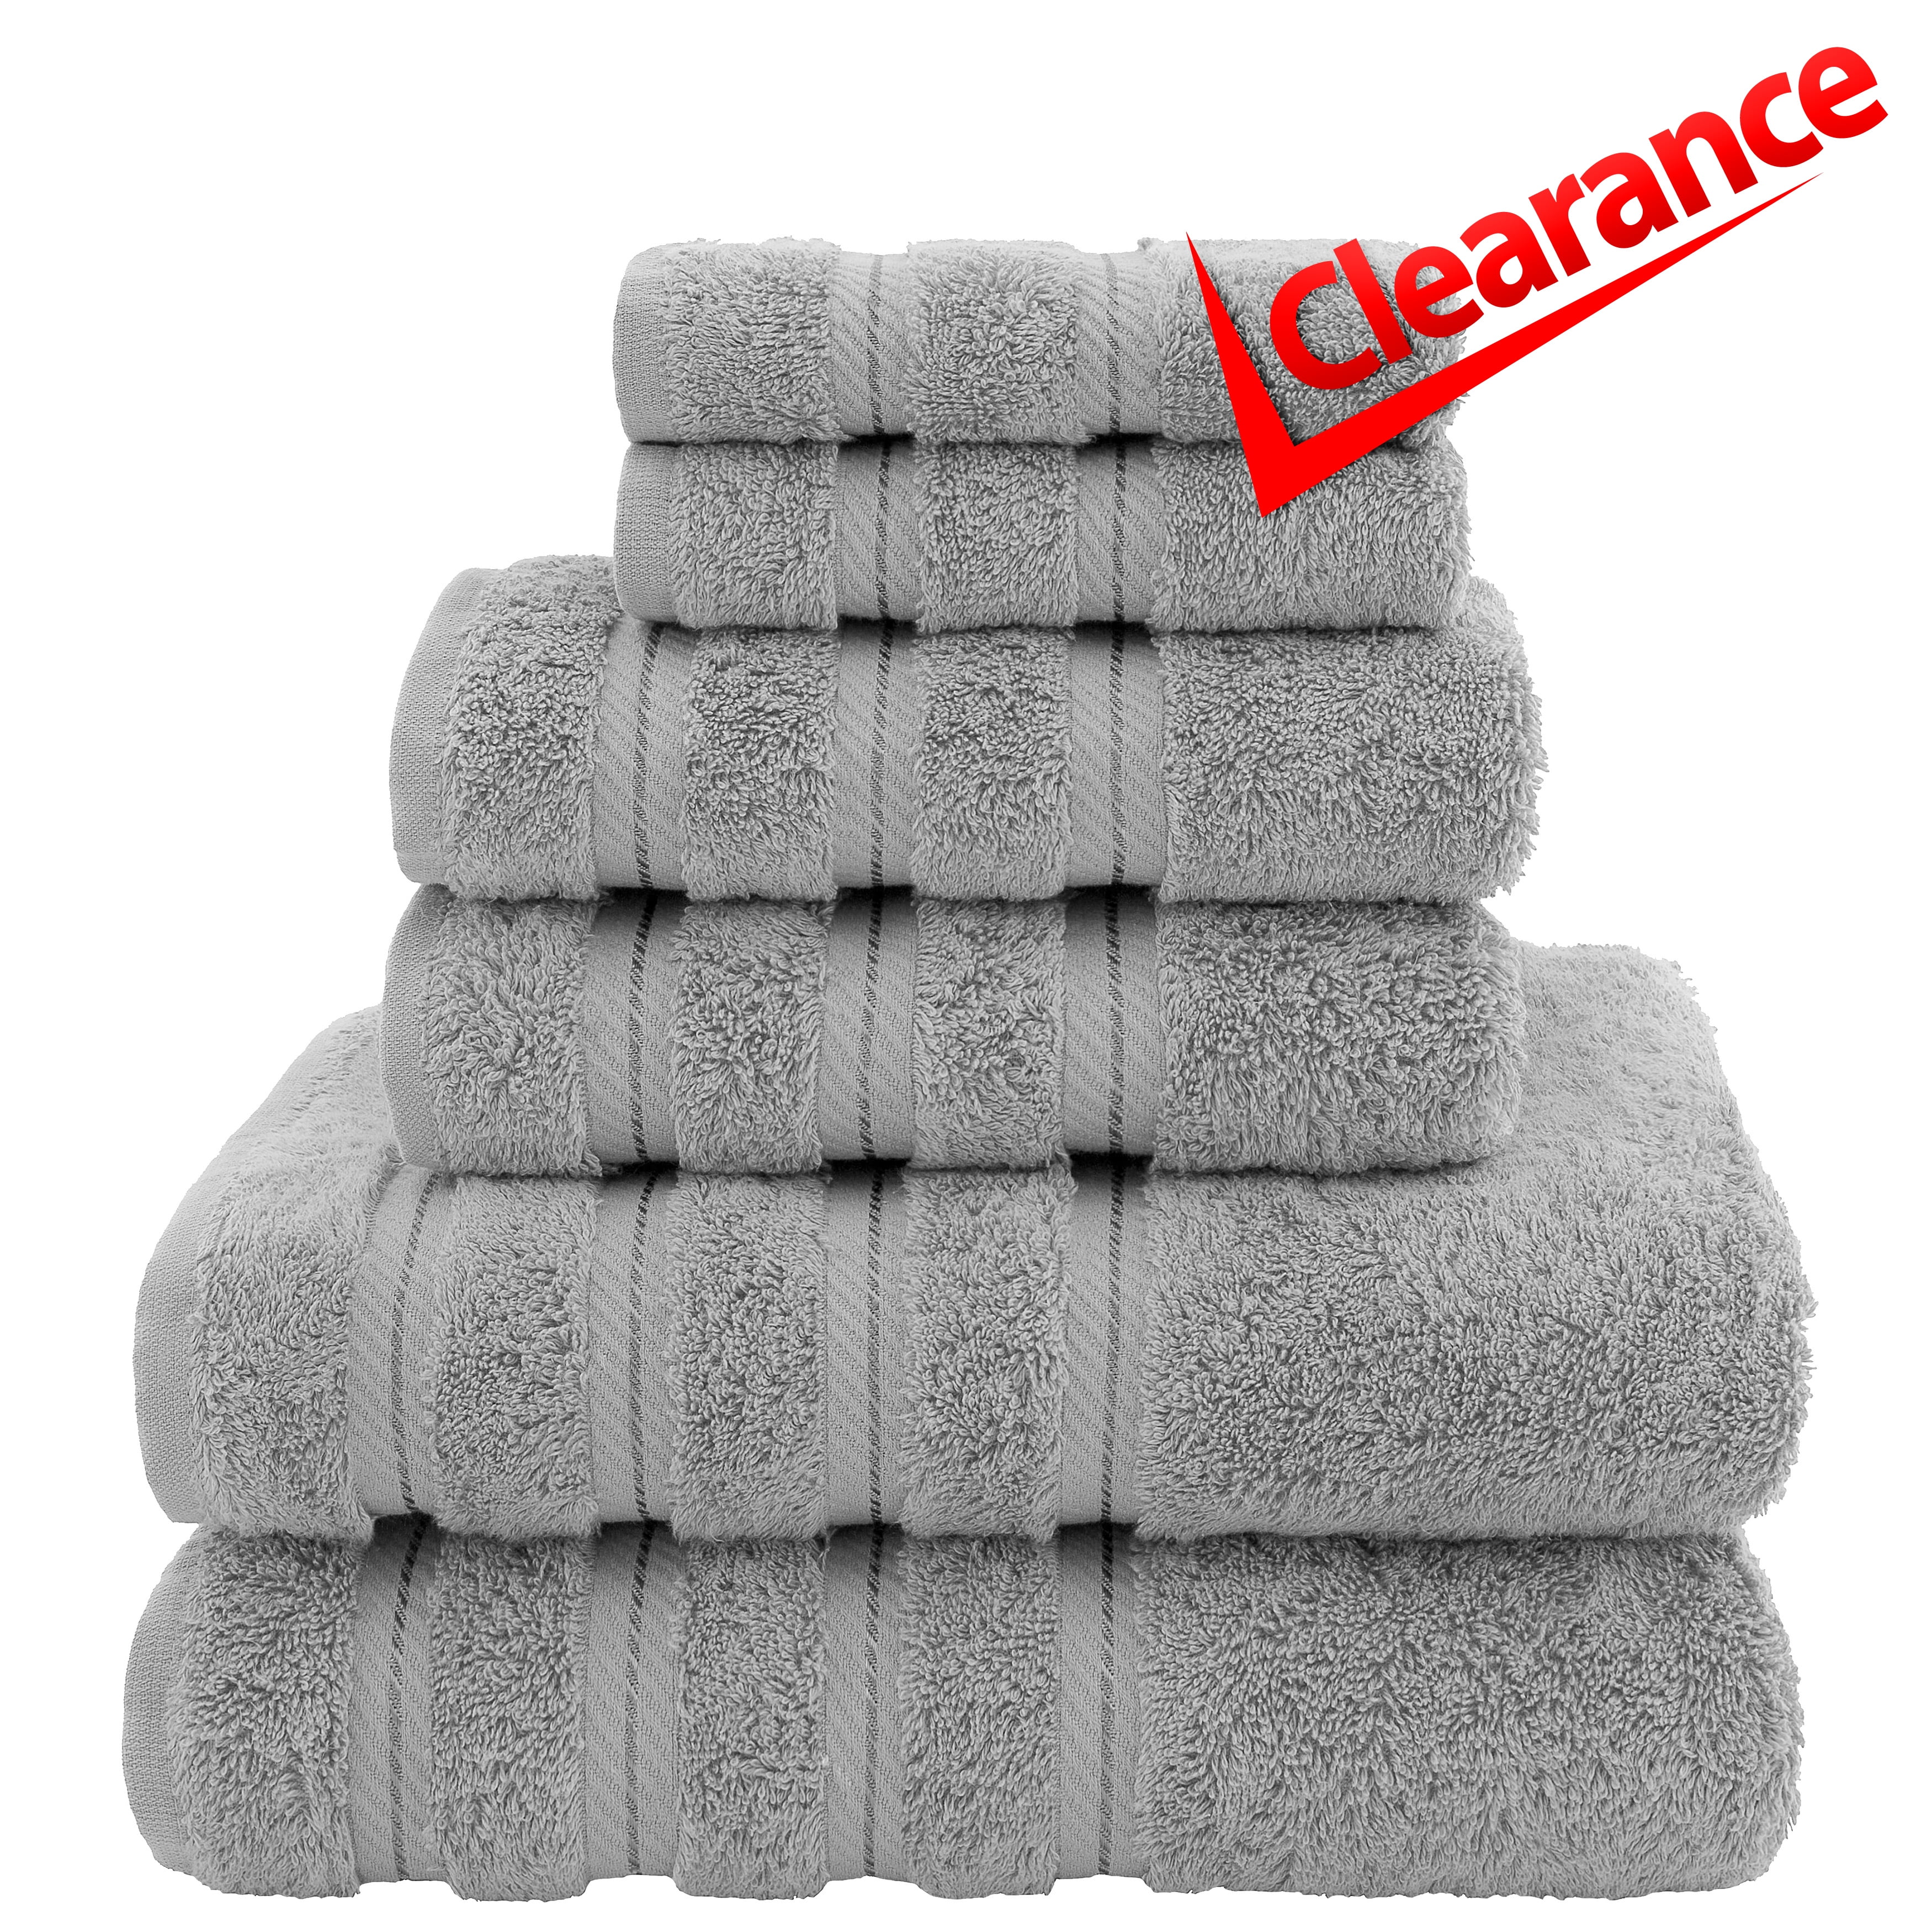  American Soft Linen - Juego de toallas de lujo de 6 piezas, 2  toallas de baño, 2 toallas de mano y 2 paños, toallas 100% de algodón turco  para baño, juegos de toallas color celeste